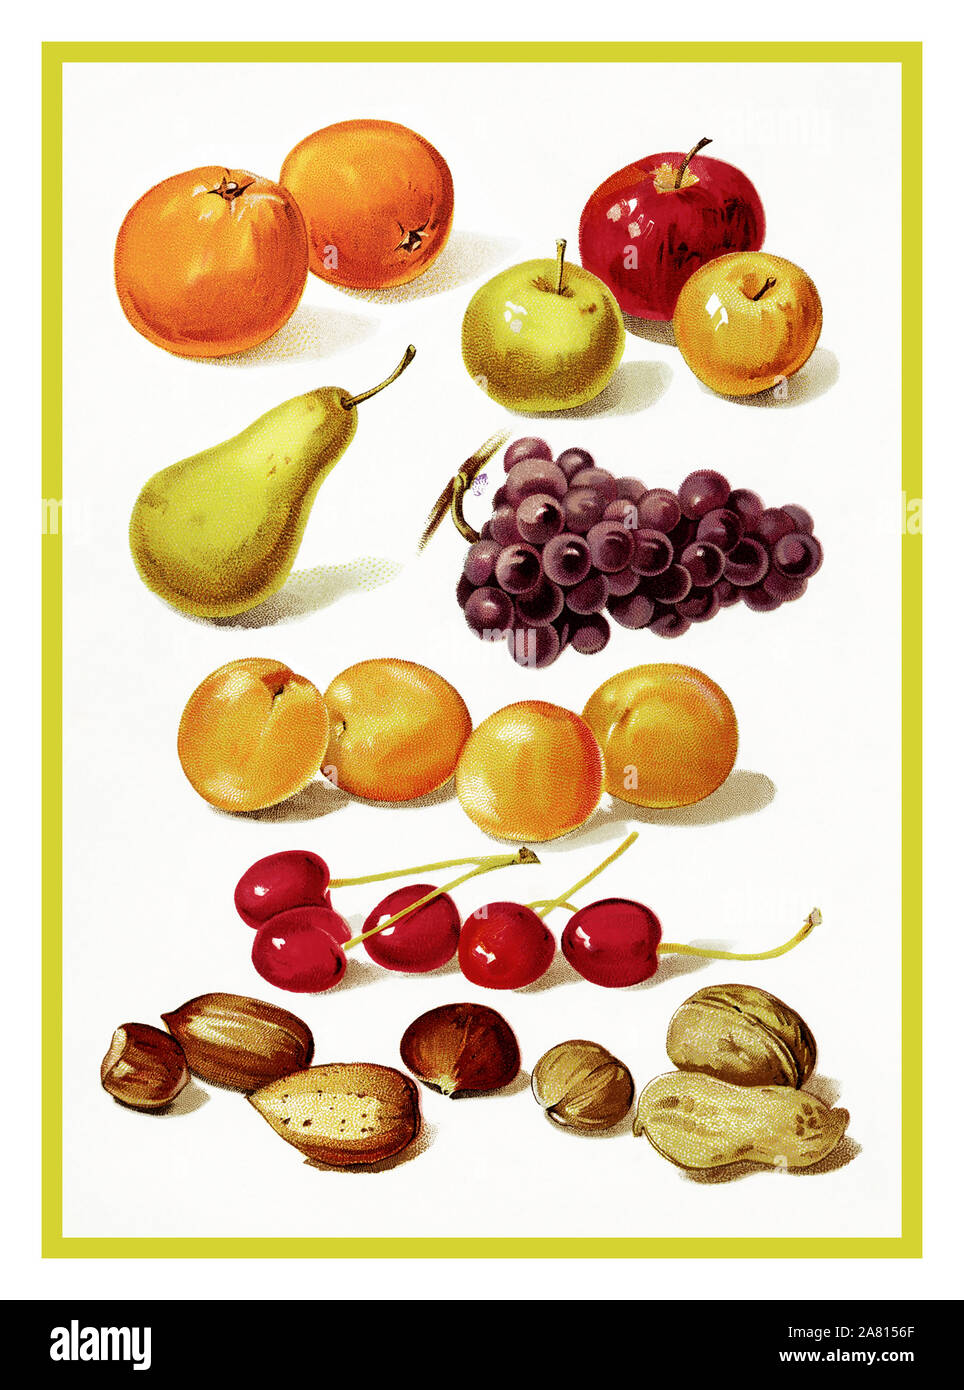 Vintage Obst gesunde Ernährung 1890 Seite Abbildung enthält die farbenfrohen Illustrationen von: Orangen, Äpfel, Birnen, Trauben, Pfirsiche, Kirschen und ein Sortiment von Muttern. Abbildung aus dem antiken Schule Lektion buchen Sie unser kleines Buch für kleine Leute, 1896. Stockfoto